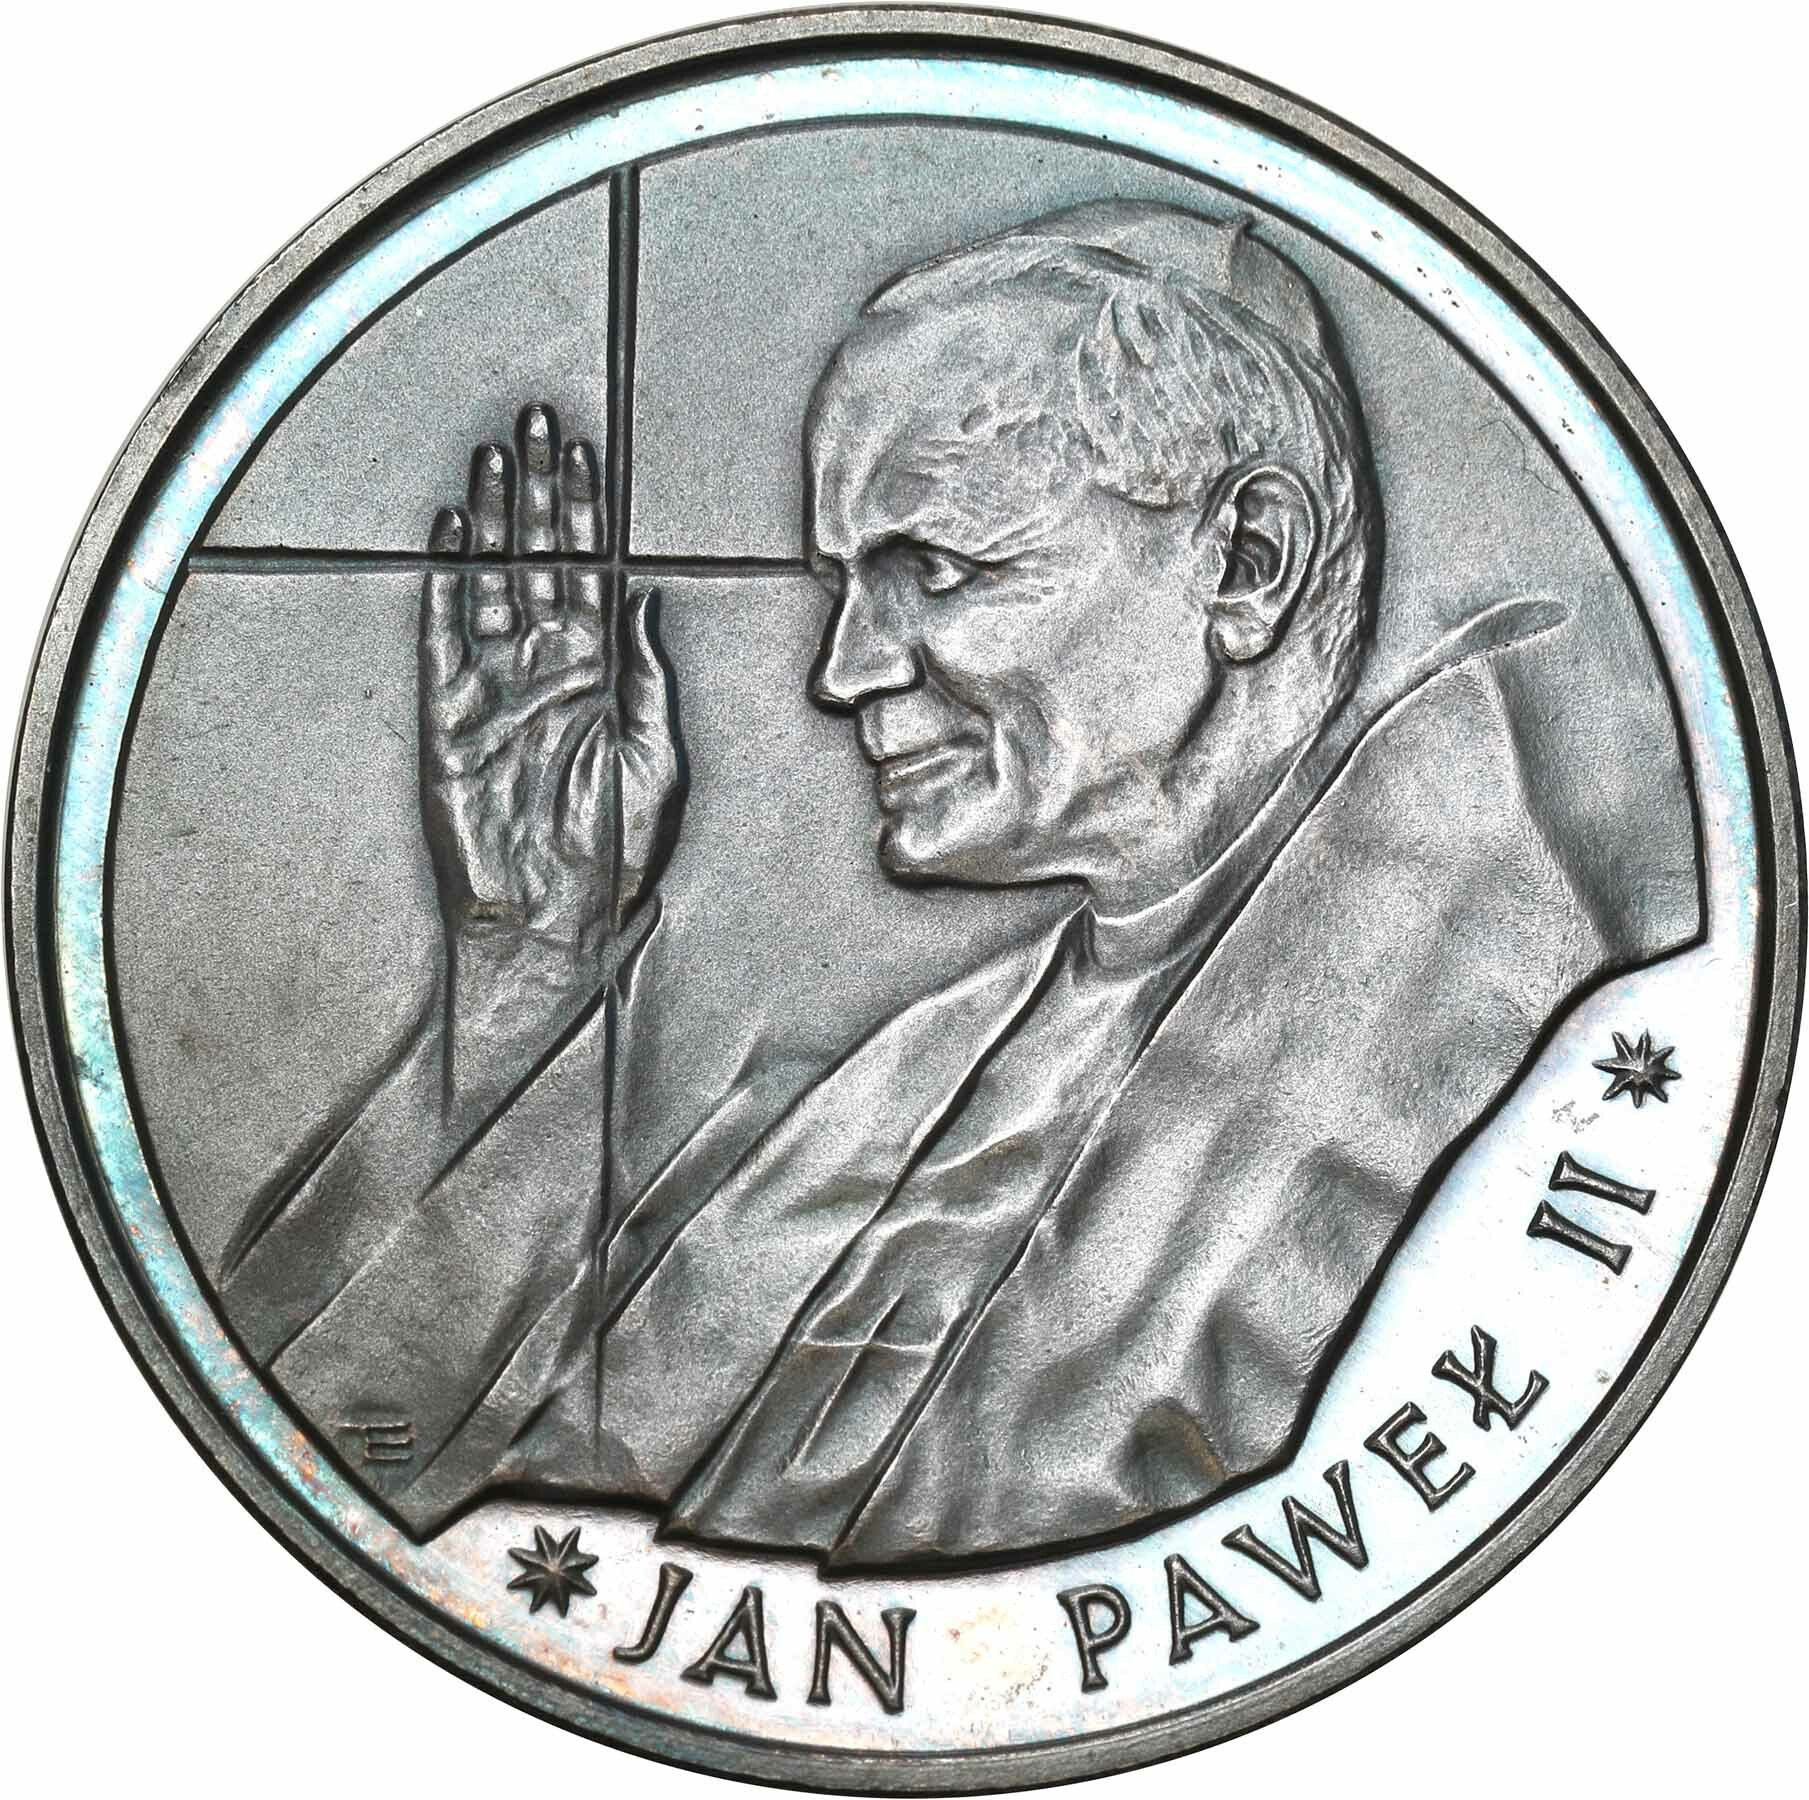 PRL. 10.000 złotych 1988 Jan Paweł II - cienki krzyż